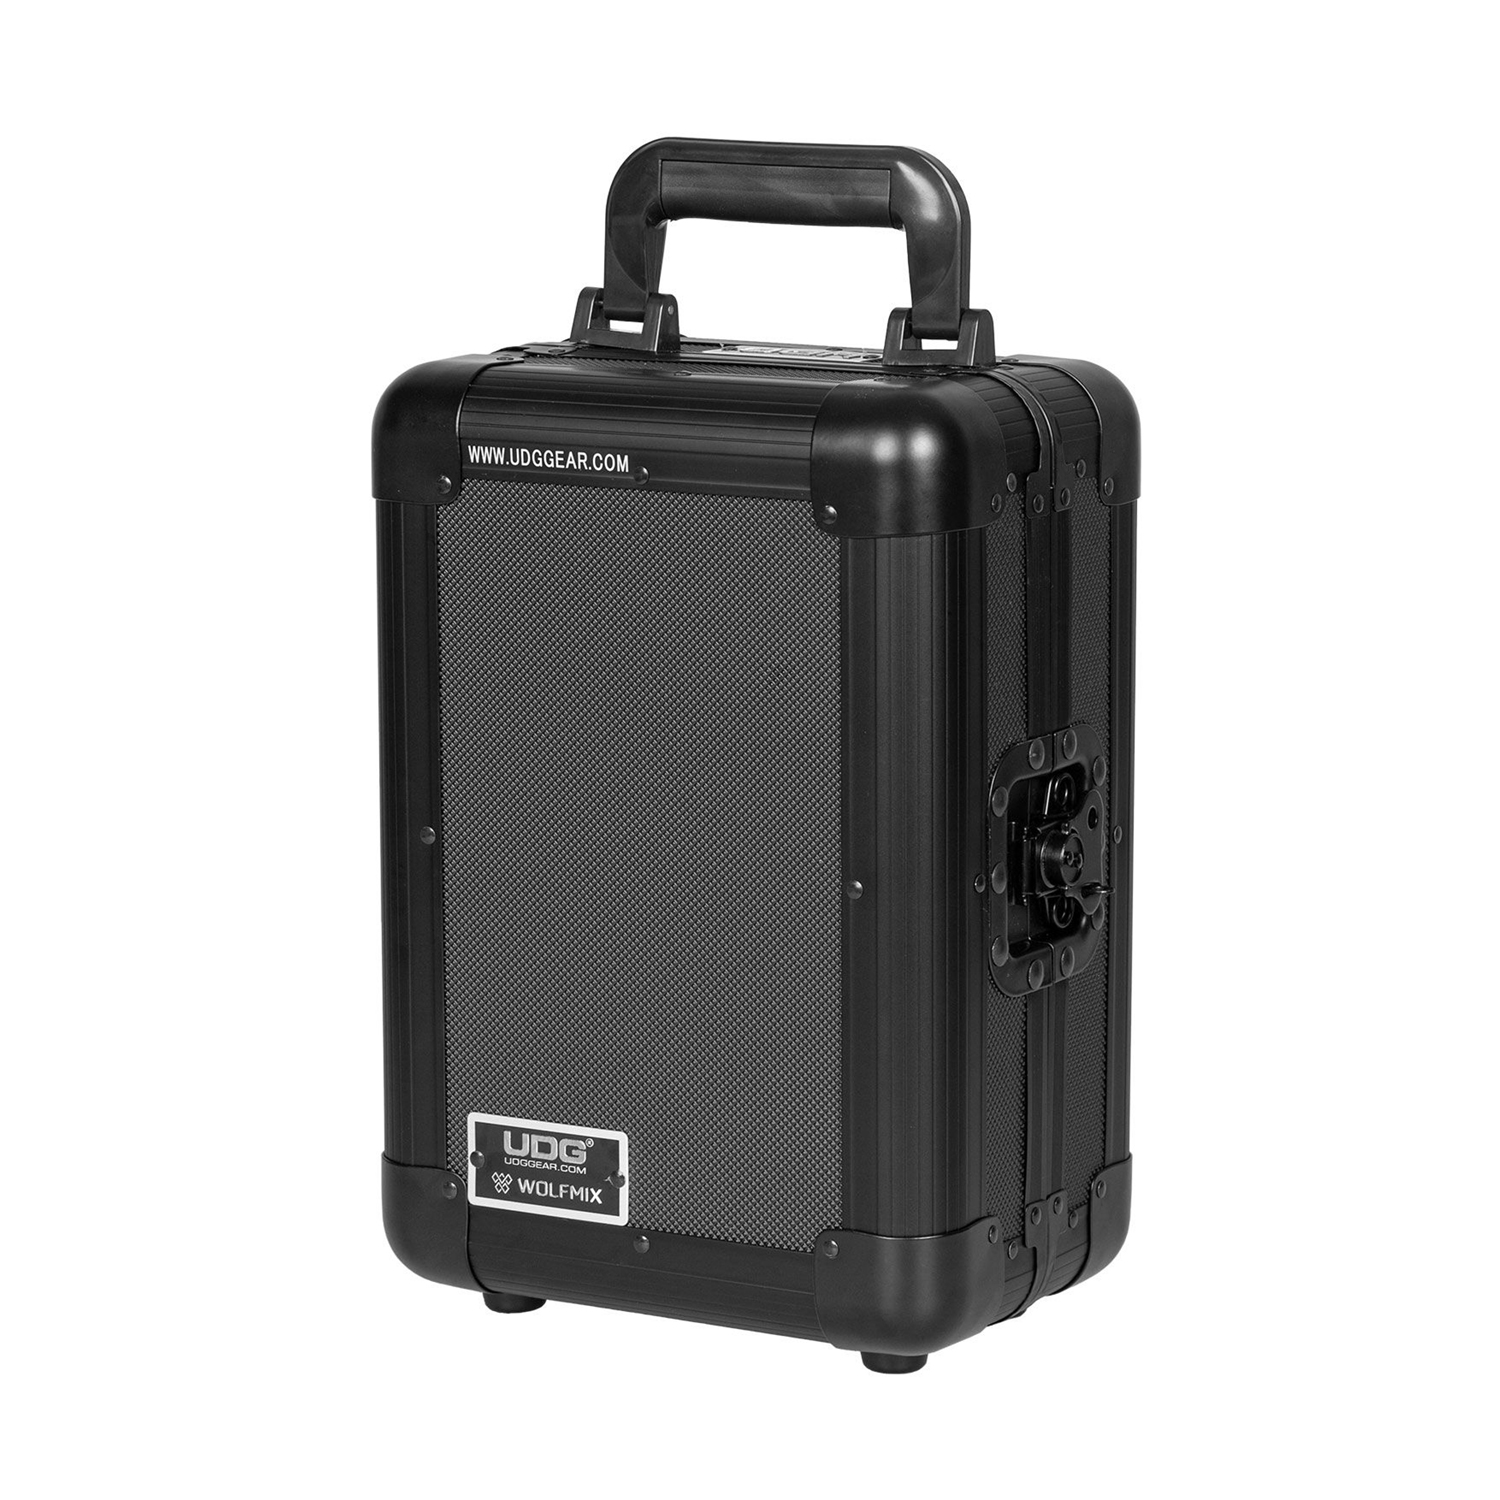 Udg U 93019 Bl (wolfmix) - Case & Bag for lighting equipment - Variation 4